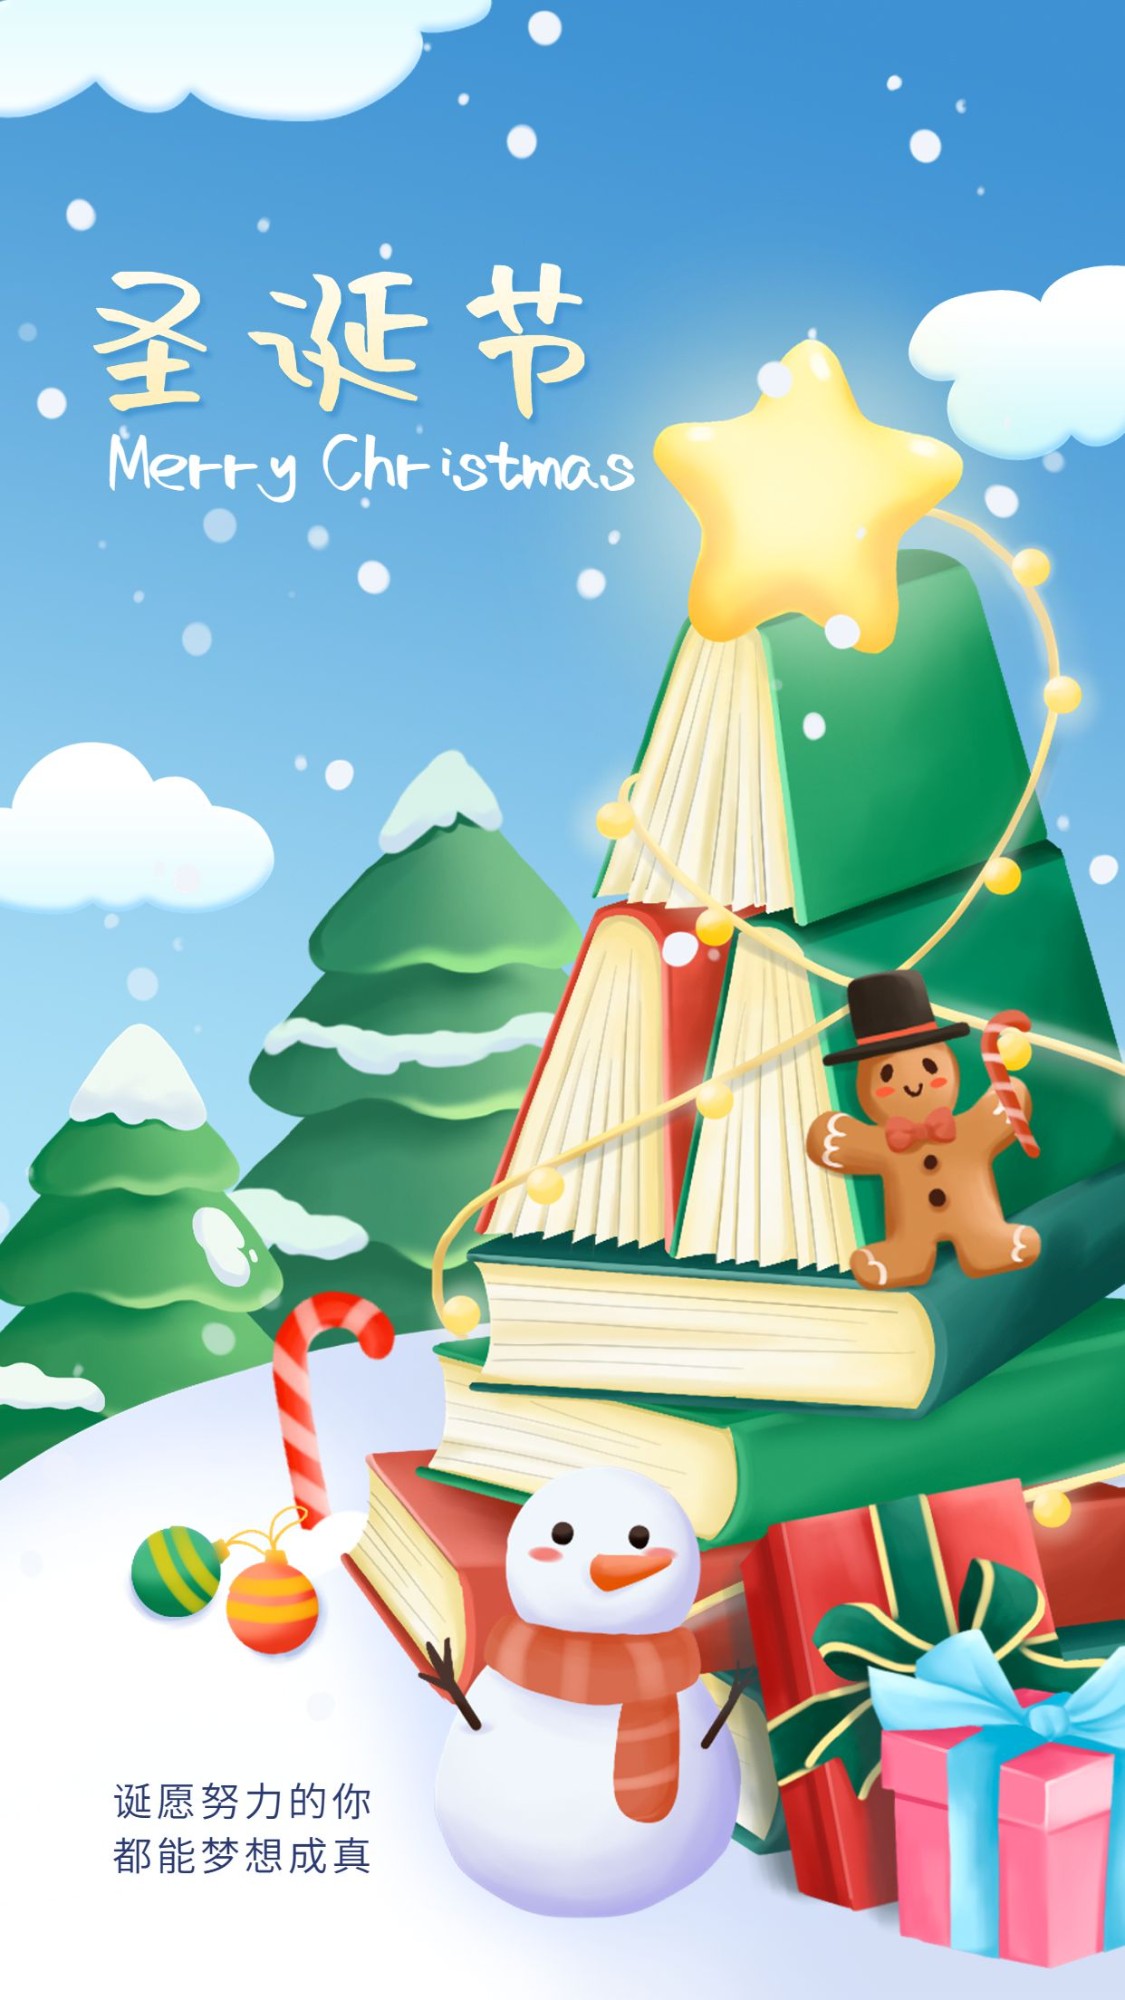 圣诞节教育行业祝福伪3D插画风格书本造型手机海报预览效果